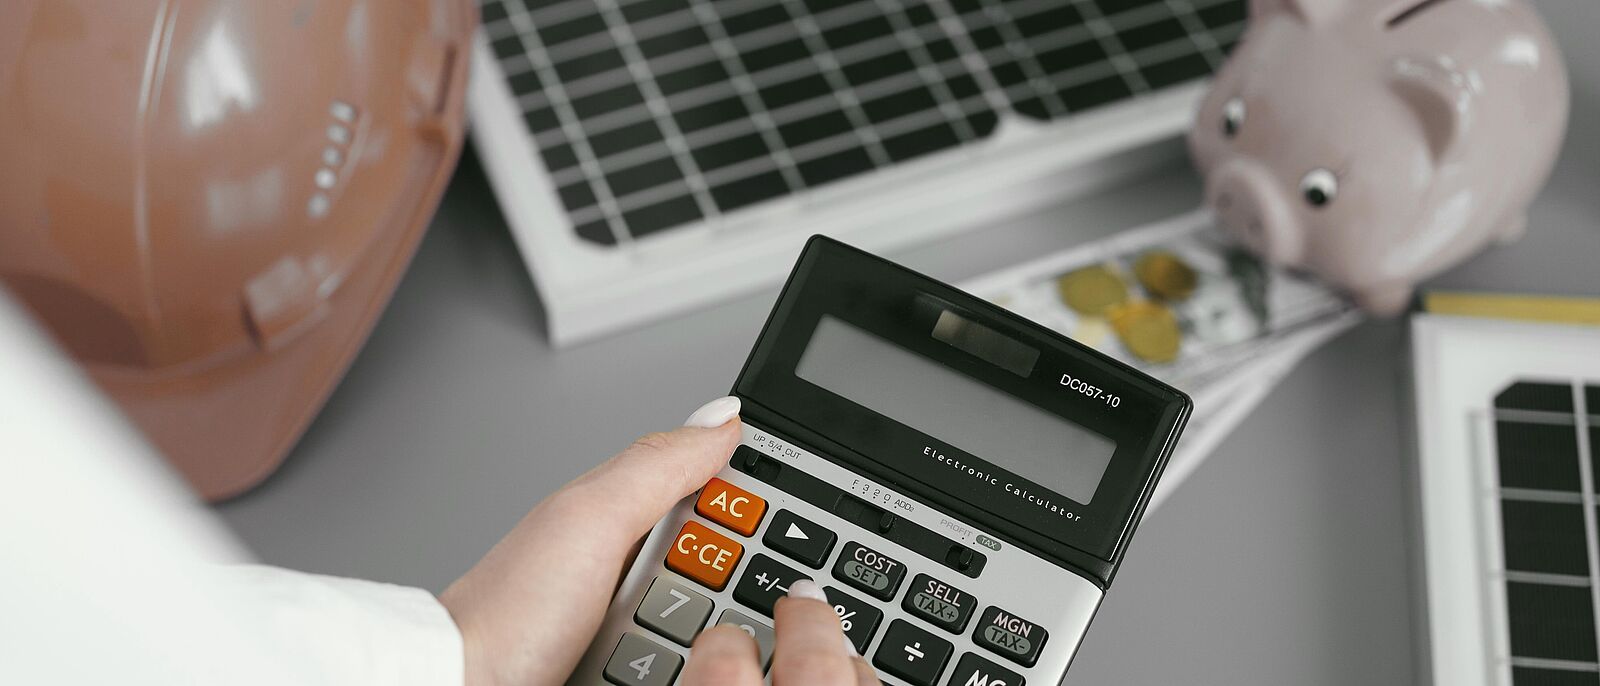 Makroaufnahme: Eine Person sitz an einem Büroplatz und führt Berechnungen an einem Taschenrechner aus. Im Hintergrund ein rosa Sparschwein, Münzen, Dokumente und die Tastatur  von einem PC.